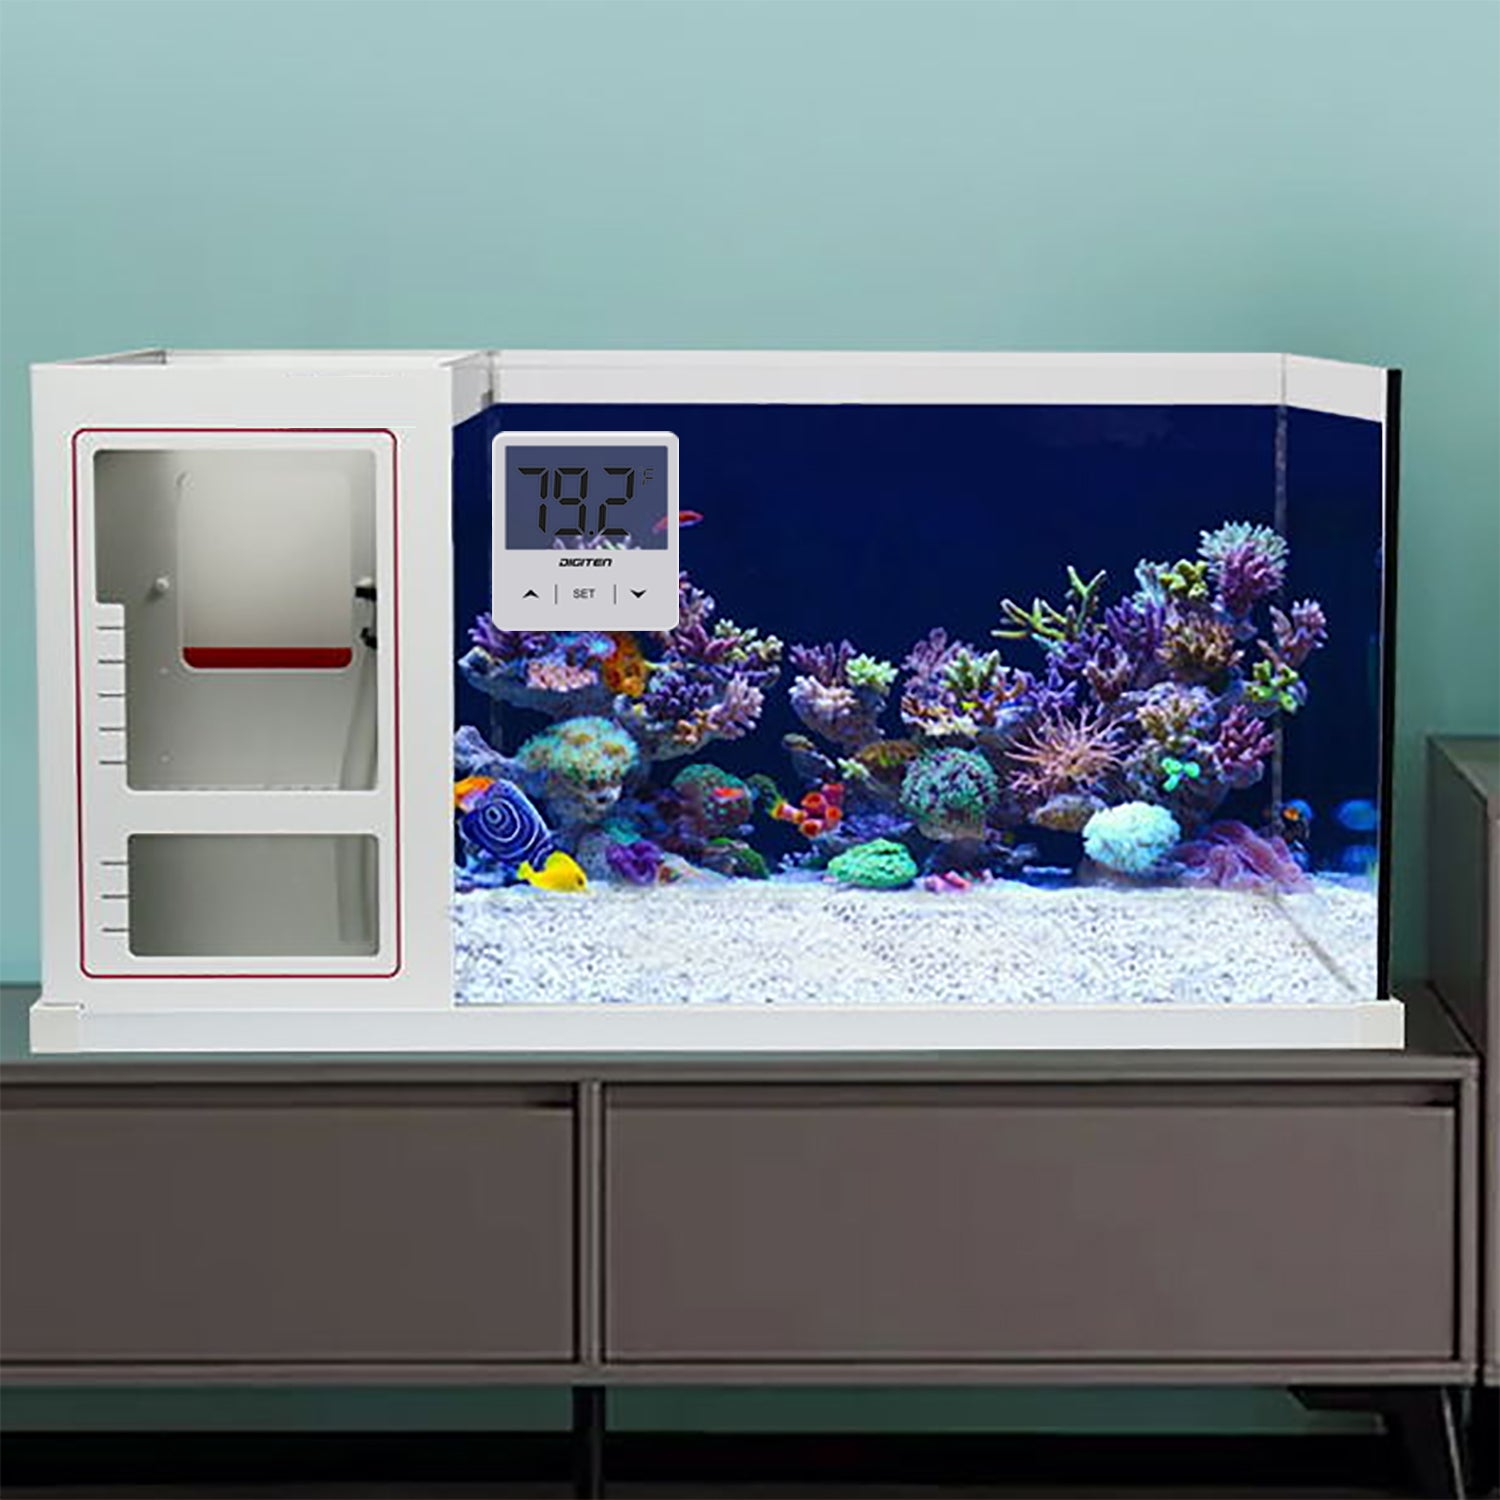 Fovolat Aquarium Digital Thermometer Clear Display Fish Tank